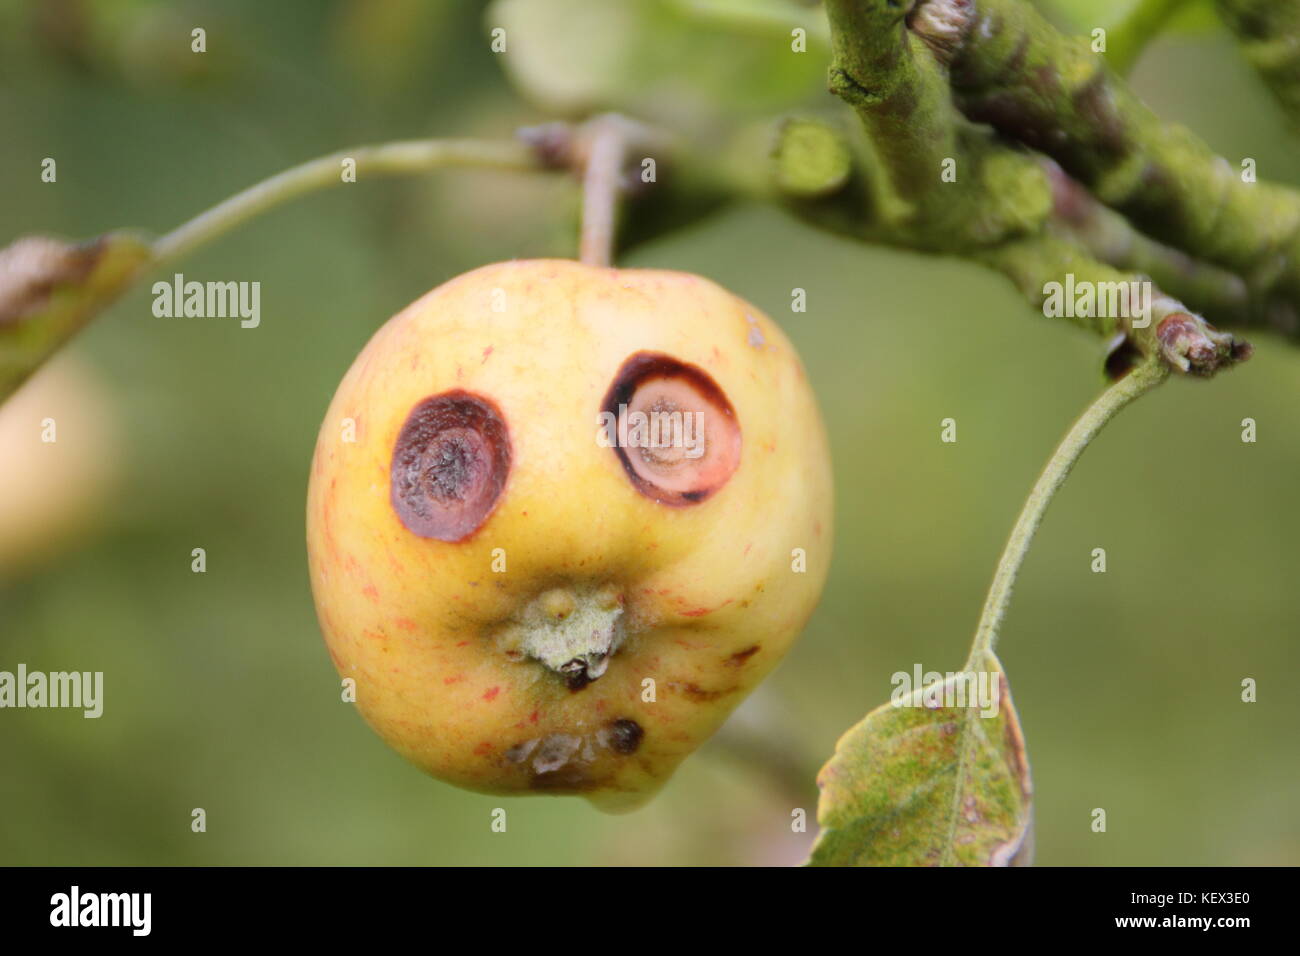 Eine süße kleine Apfel auf einem Baum in einem englischen Orchard erscheint ein lustiges Gesicht zu haben, mit großen Augen, die durch Obst Schorf, eine Pilzkrankheit von Obstbäumen Stockfoto